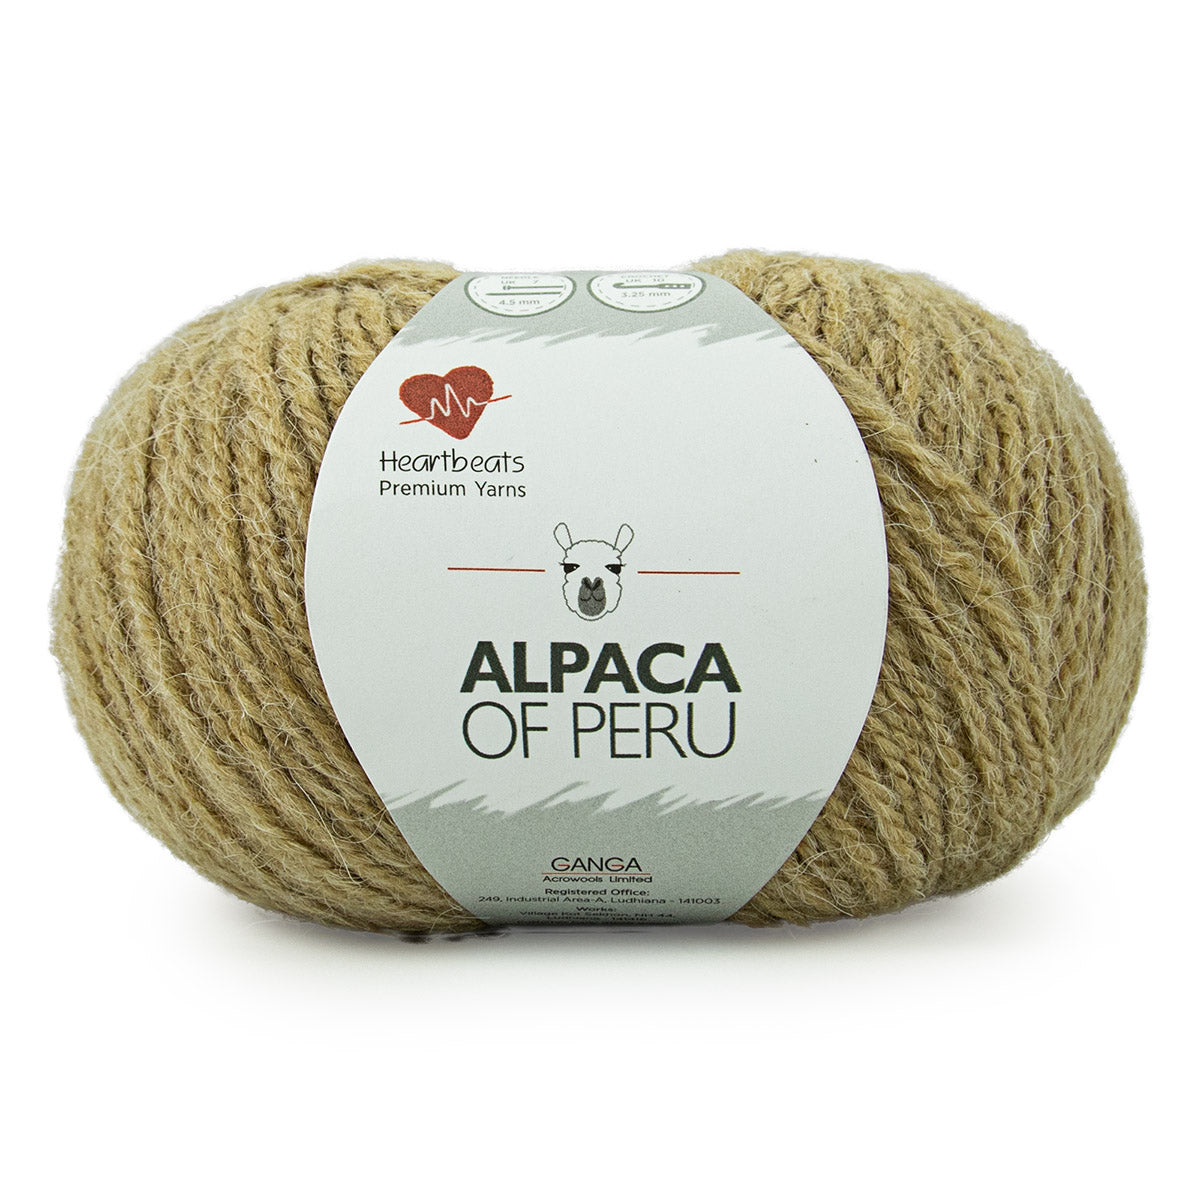 Alpaca of Peru